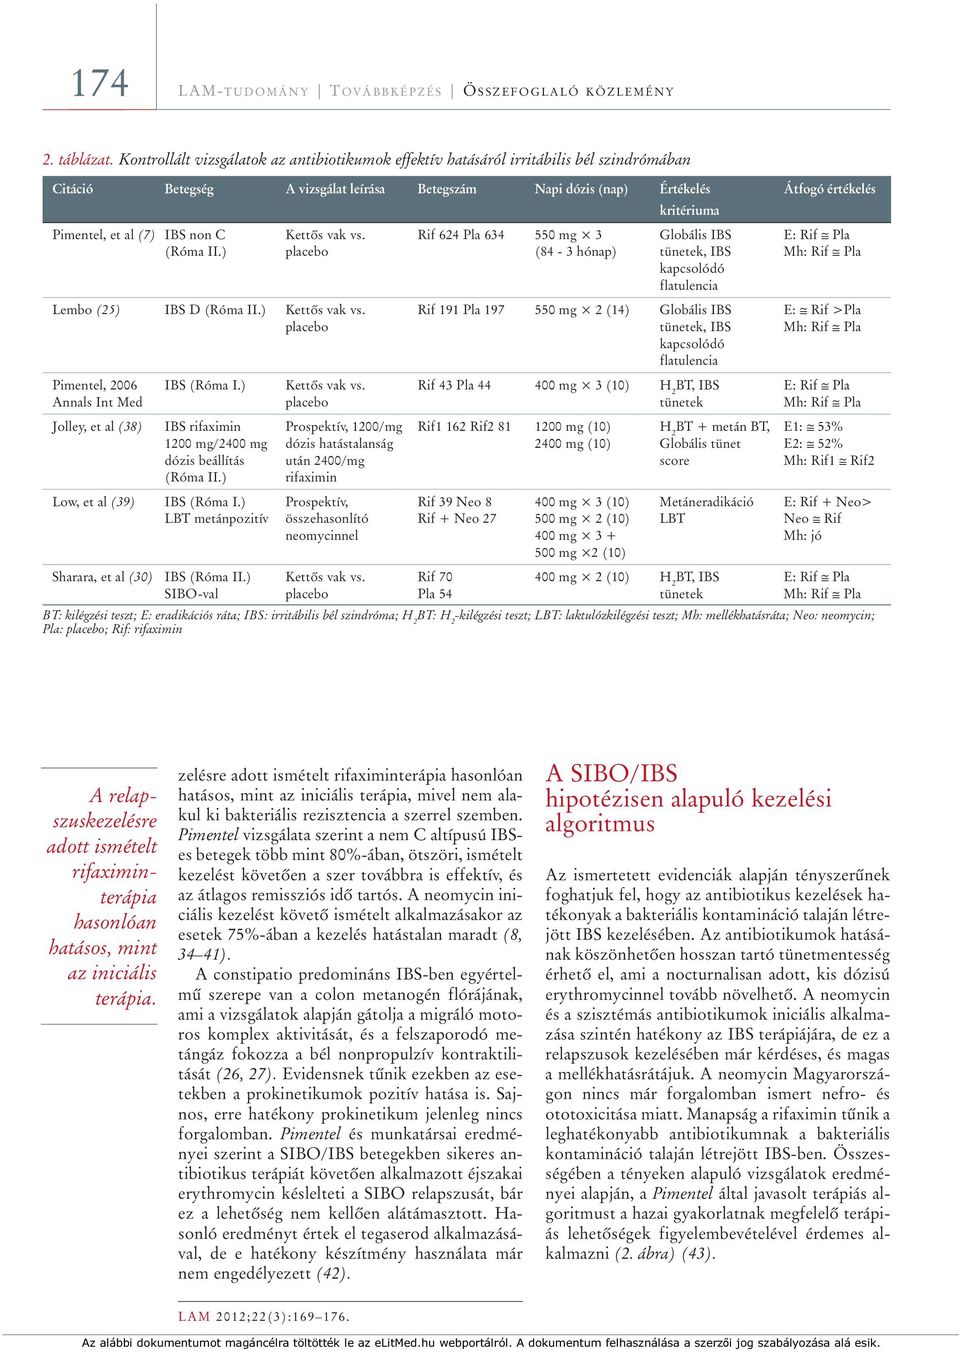 Pimentel, et al (7) IBS non C Kettôs vak vs. Rif 624 Pla 634 550 mg 3 Globális IBS E: Rif Pla (Róma II.) placebo (84-3 hónap) tünetek, IBS Mh: Rif Pla kapcsolódó flatulencia Lembo (25) IBS D (Róma II.